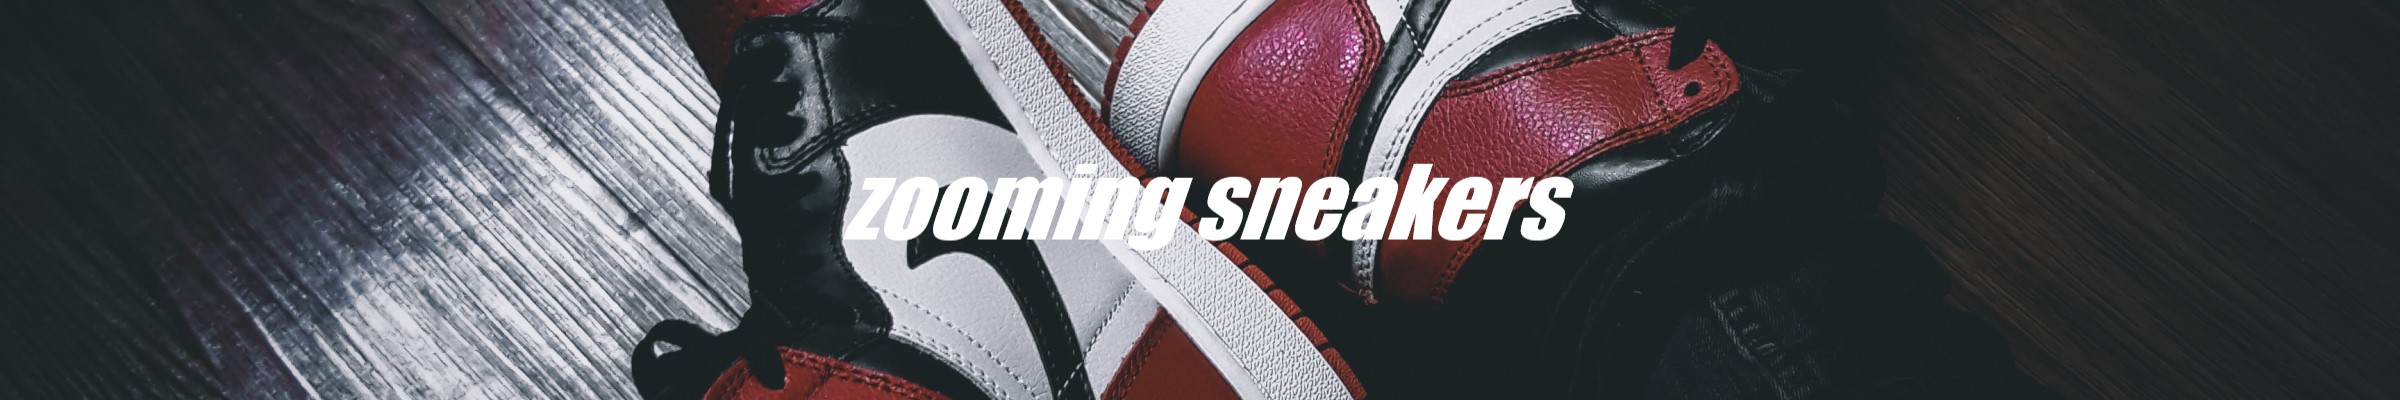 zooming sneakers